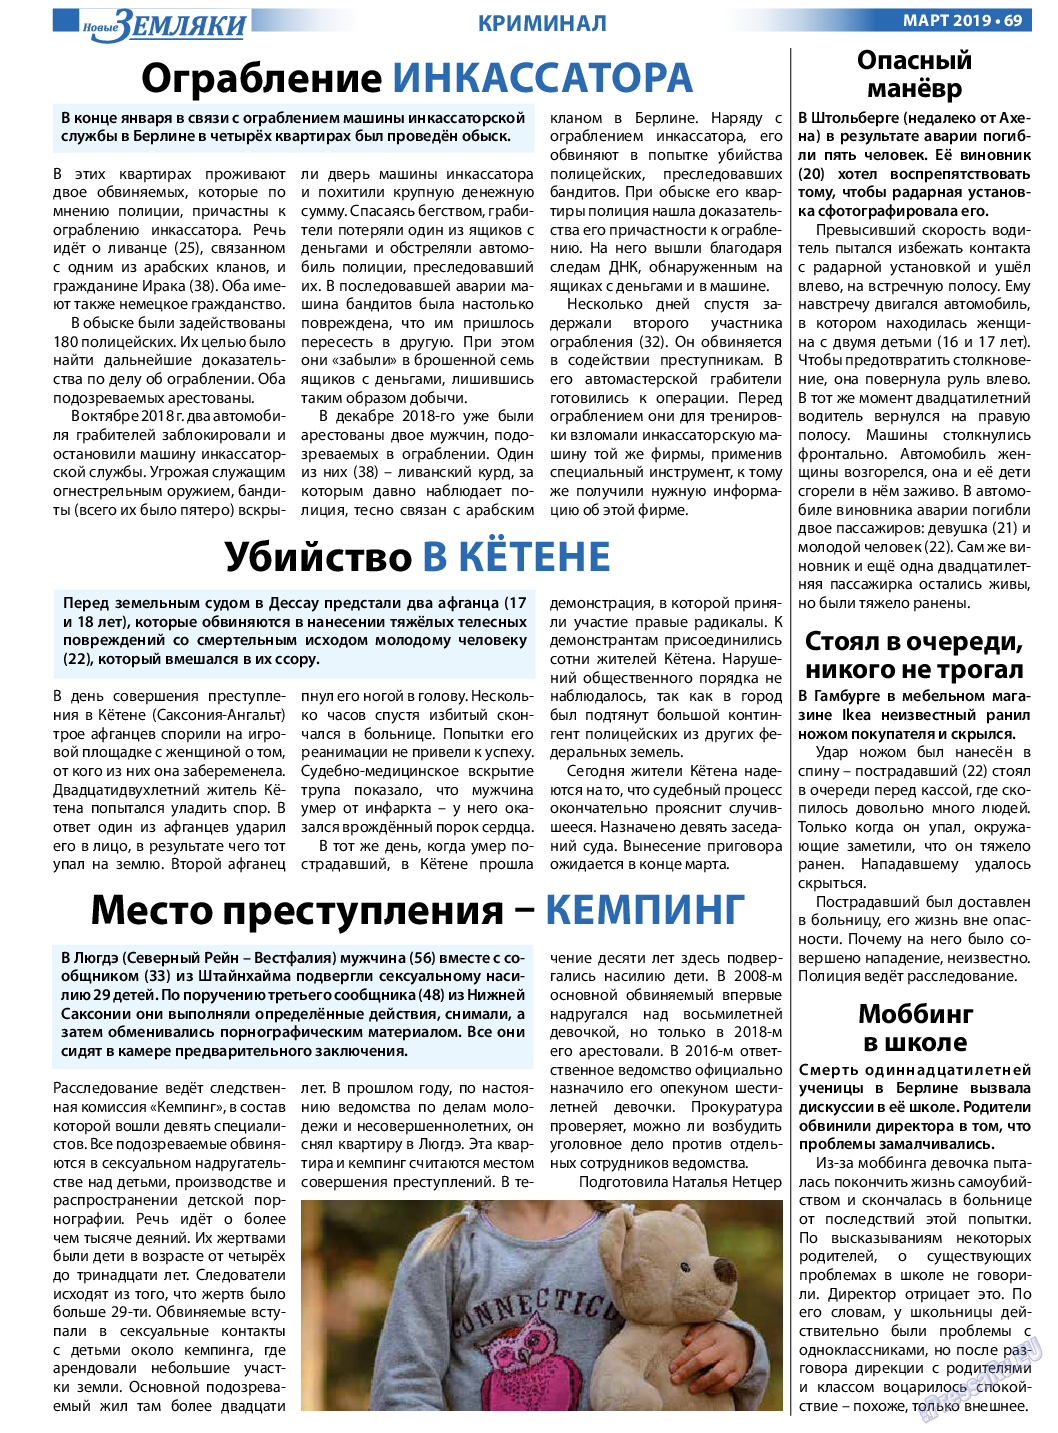 Новые Земляки, газета. 2019 №3 стр.69